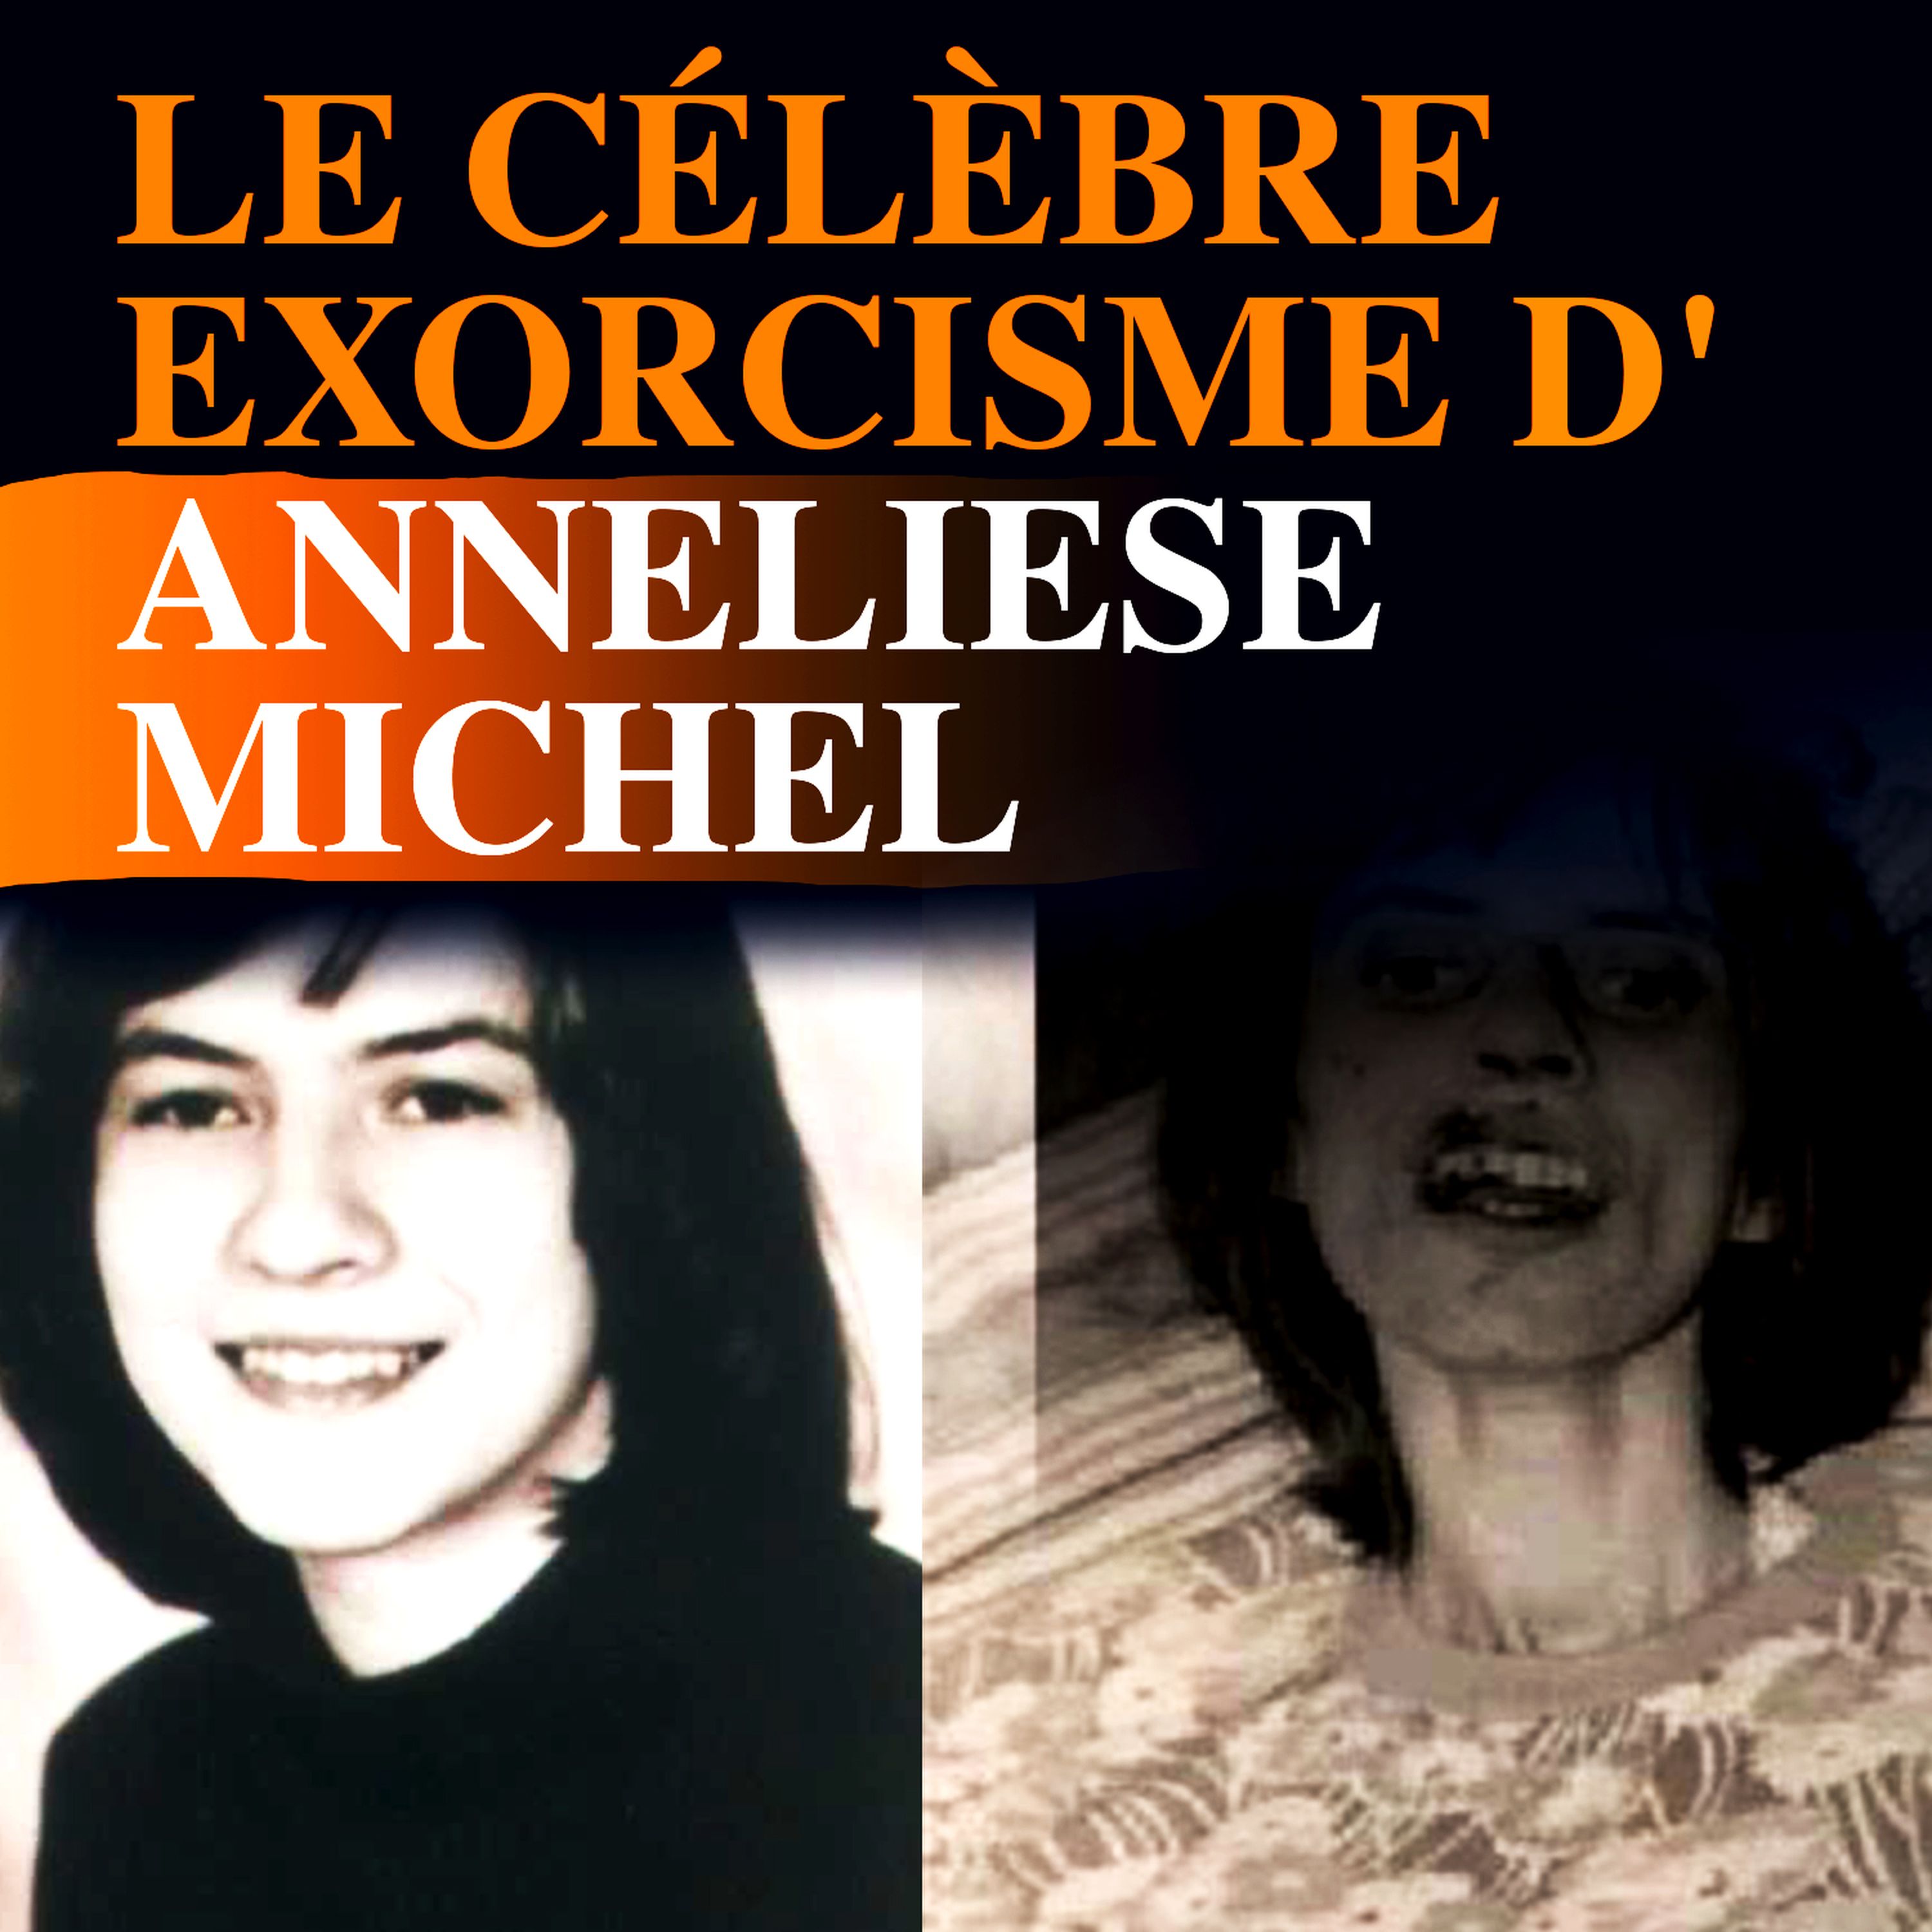 Le célèbre exorcisme d'Anneliese Michel